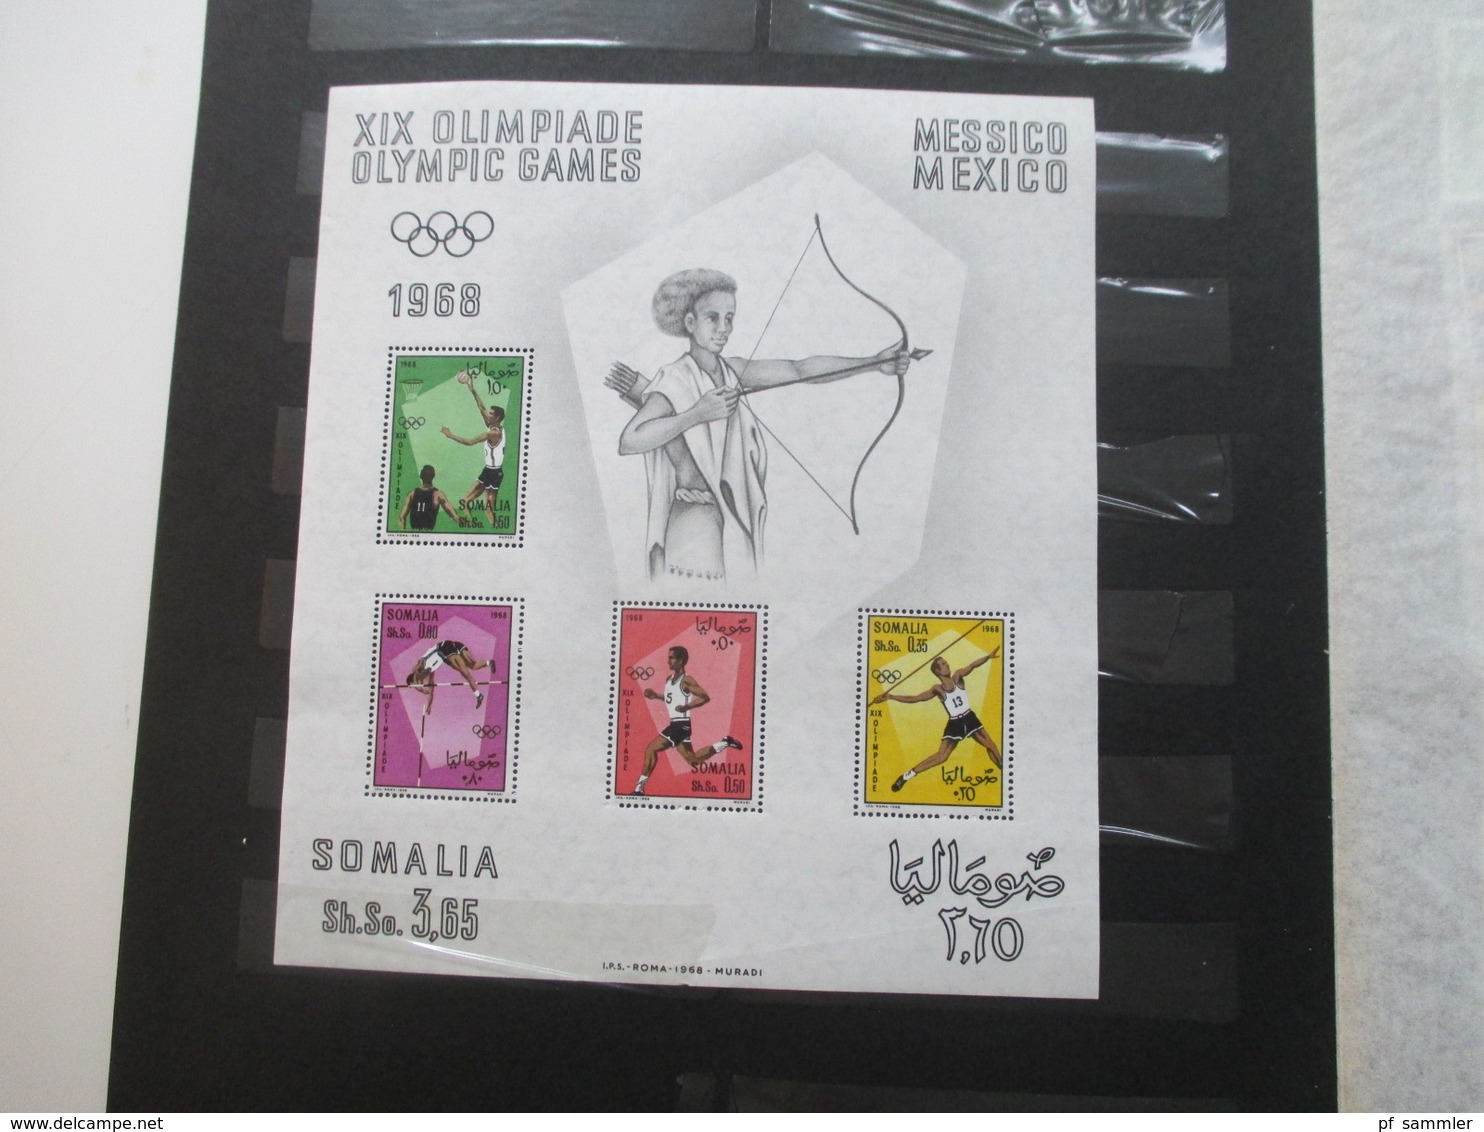 Somalia Slg. ca. 1960 - 68 postfrisch / ** Randstücke!! + weitere Gebiete Afrika und Motive. Stöberalbum!!!